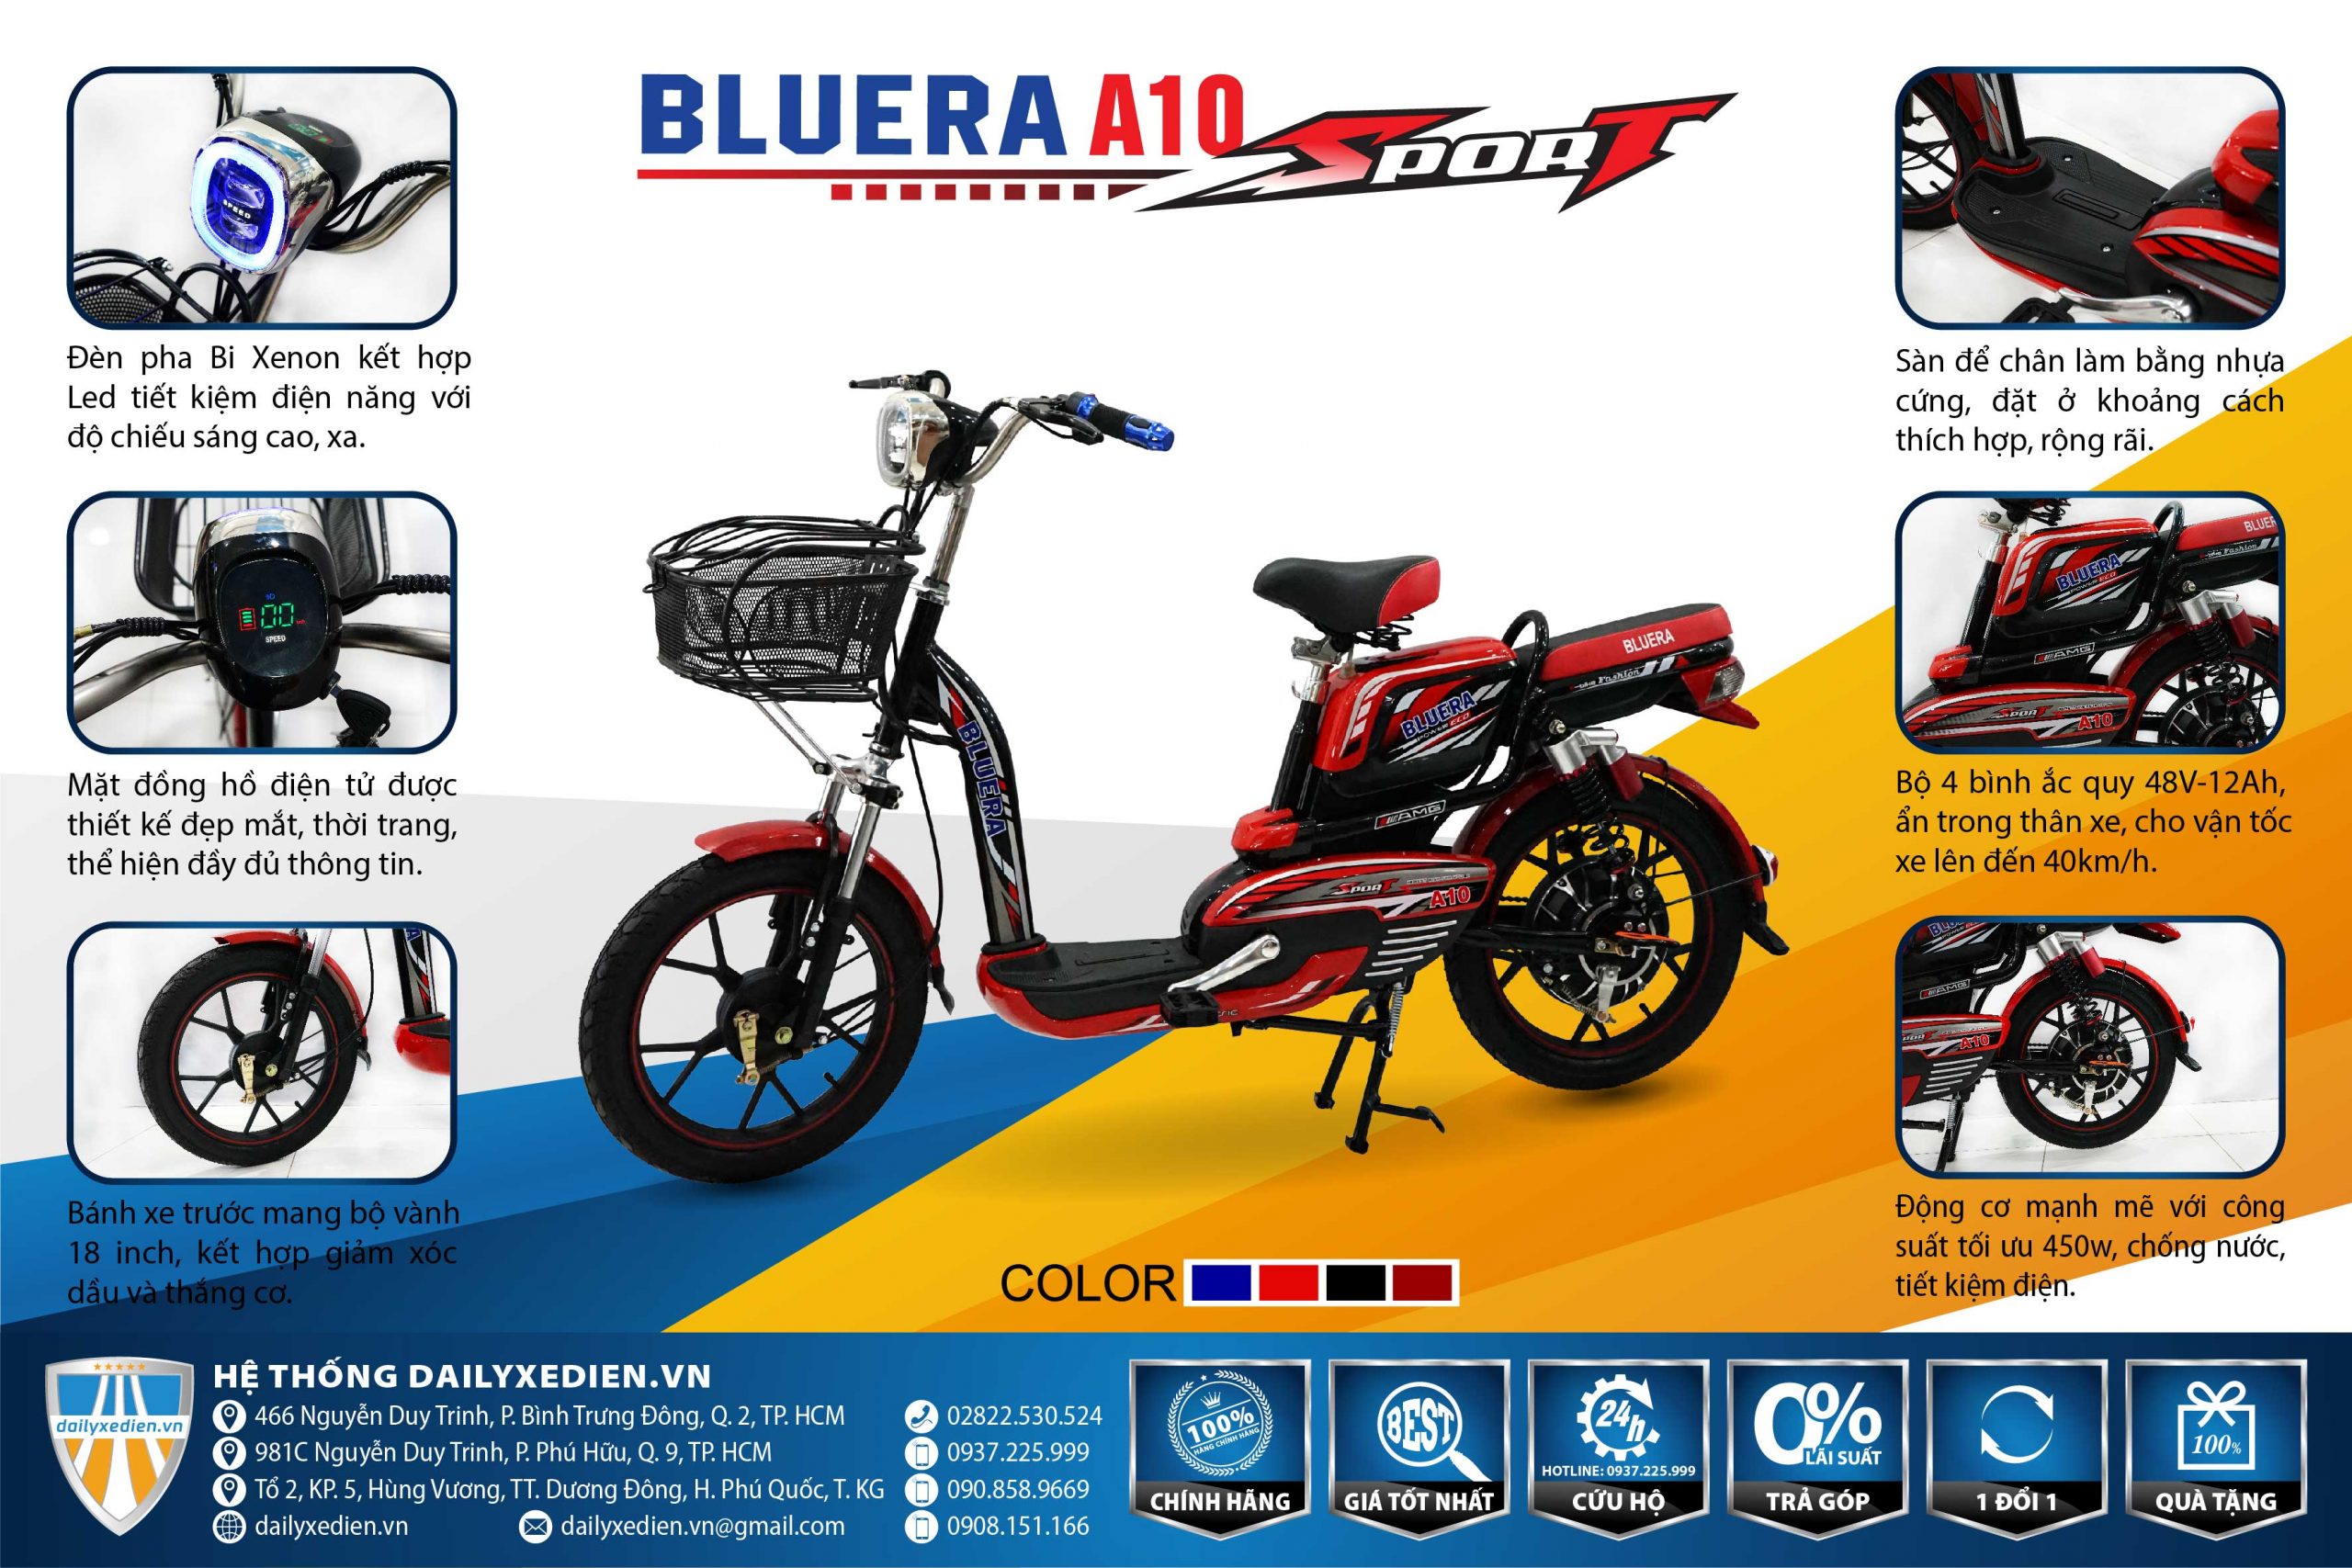 xe dap dien bluera sport a10 TT 01 scaled - Xe đạp điện Bluera Sport A10